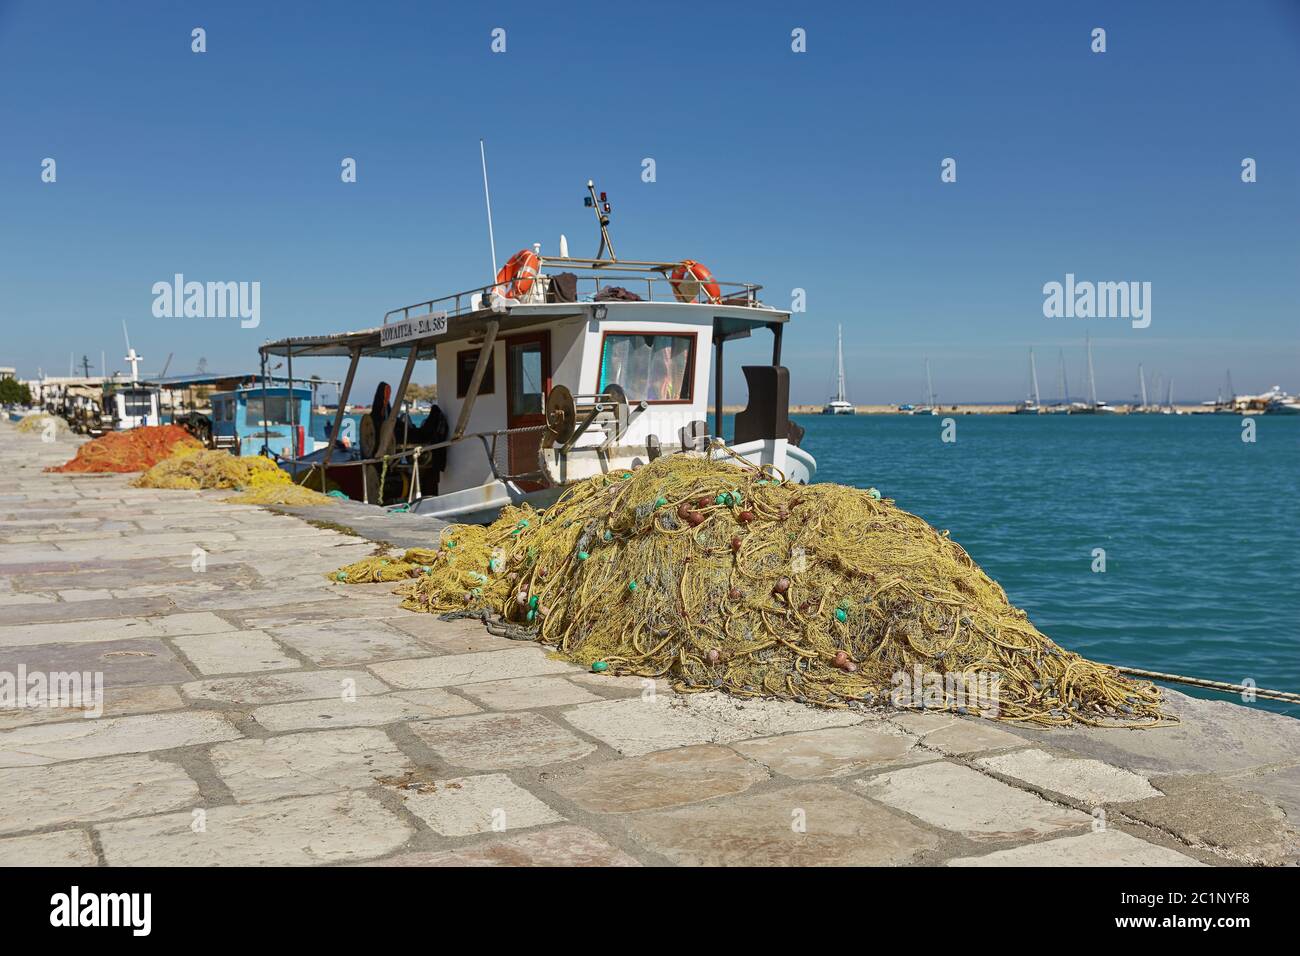 Bateaux de pêche amarrant à l'île de Zakynthos, Mer Ionienne, Grèce, Europe. Banque D'Images